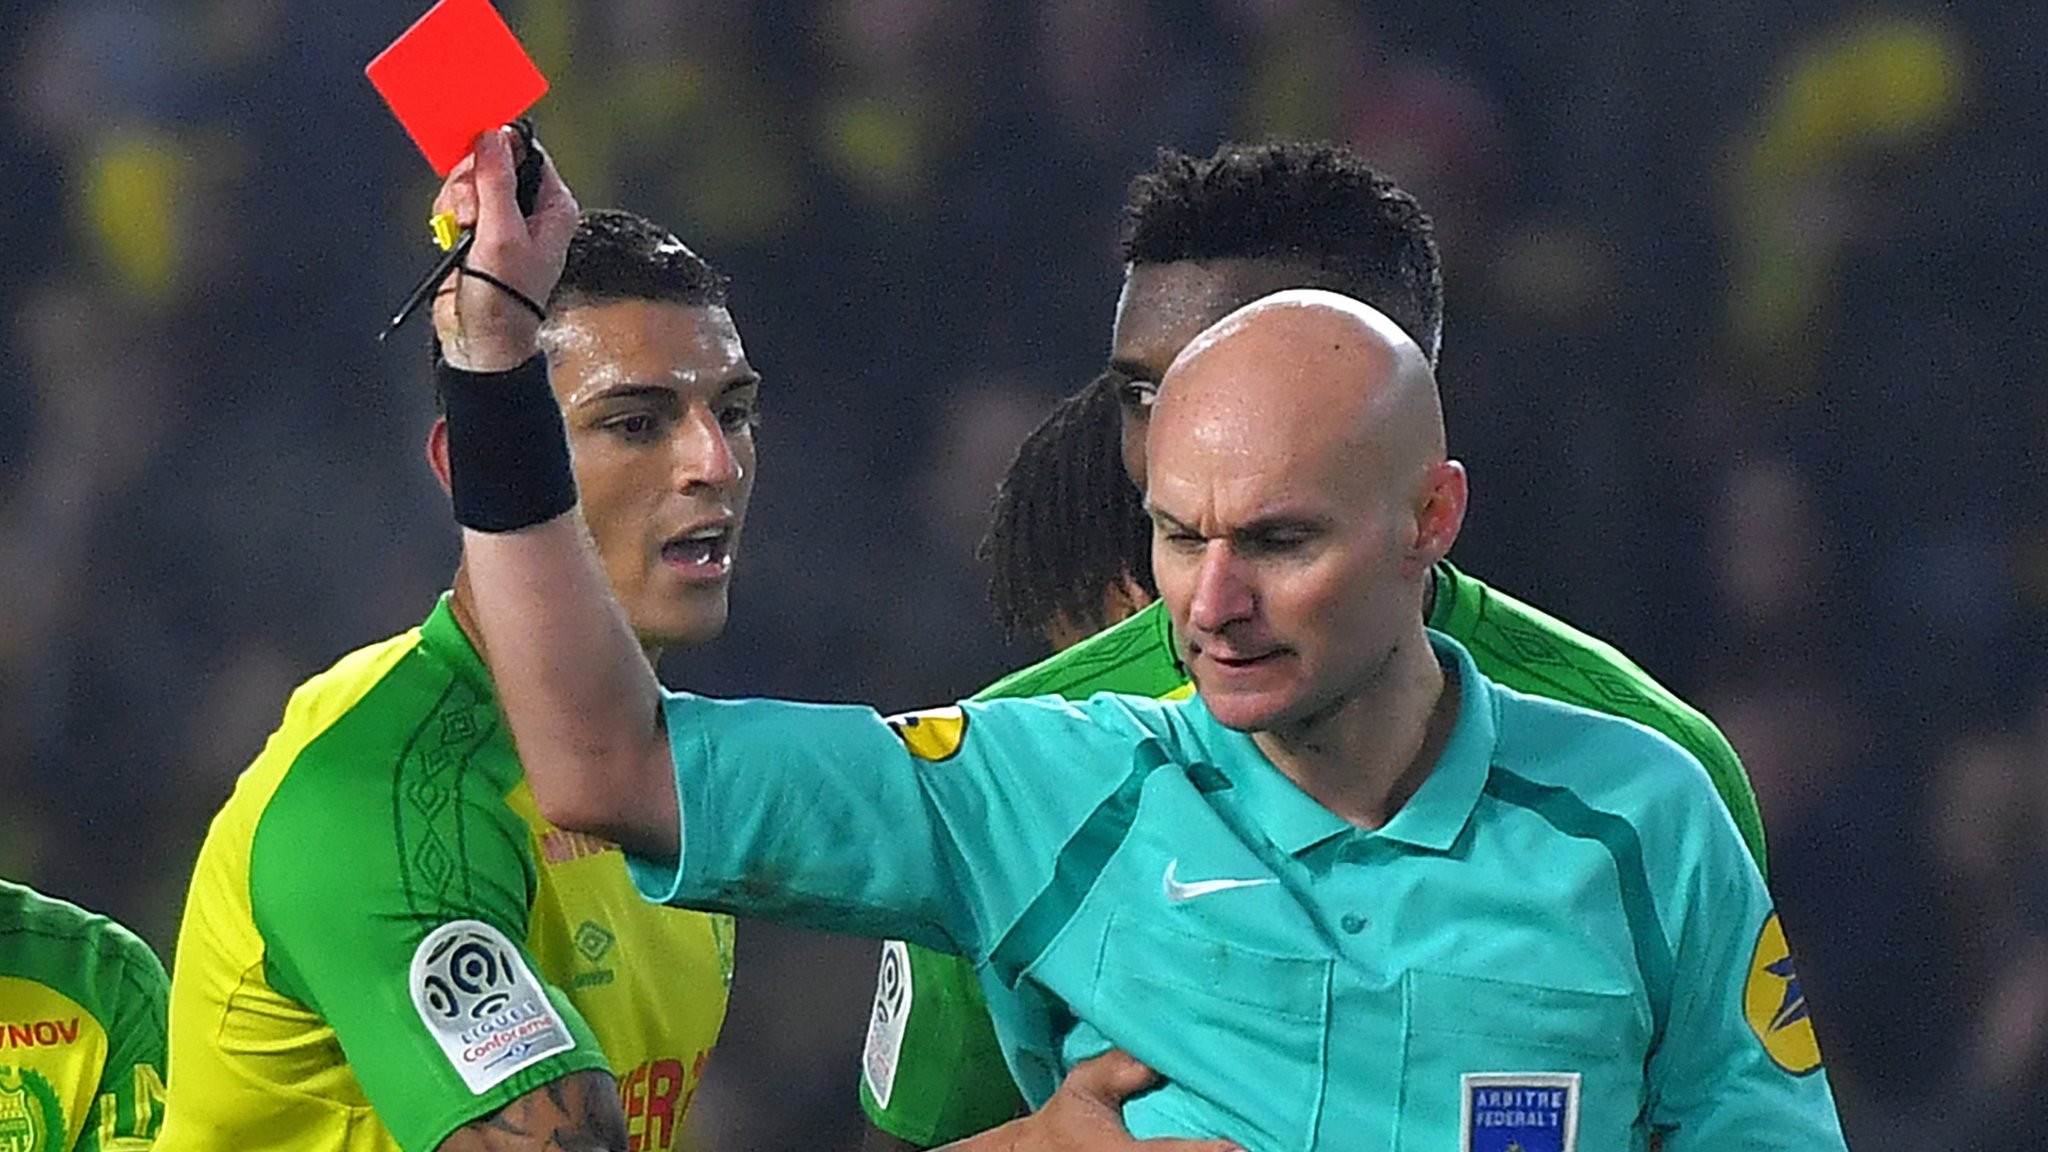 insólita reacción de un árbitro que le lanza una patada un jugador y lo termina expulsando del partido entre Nantes y PSG - BBC News Mundo